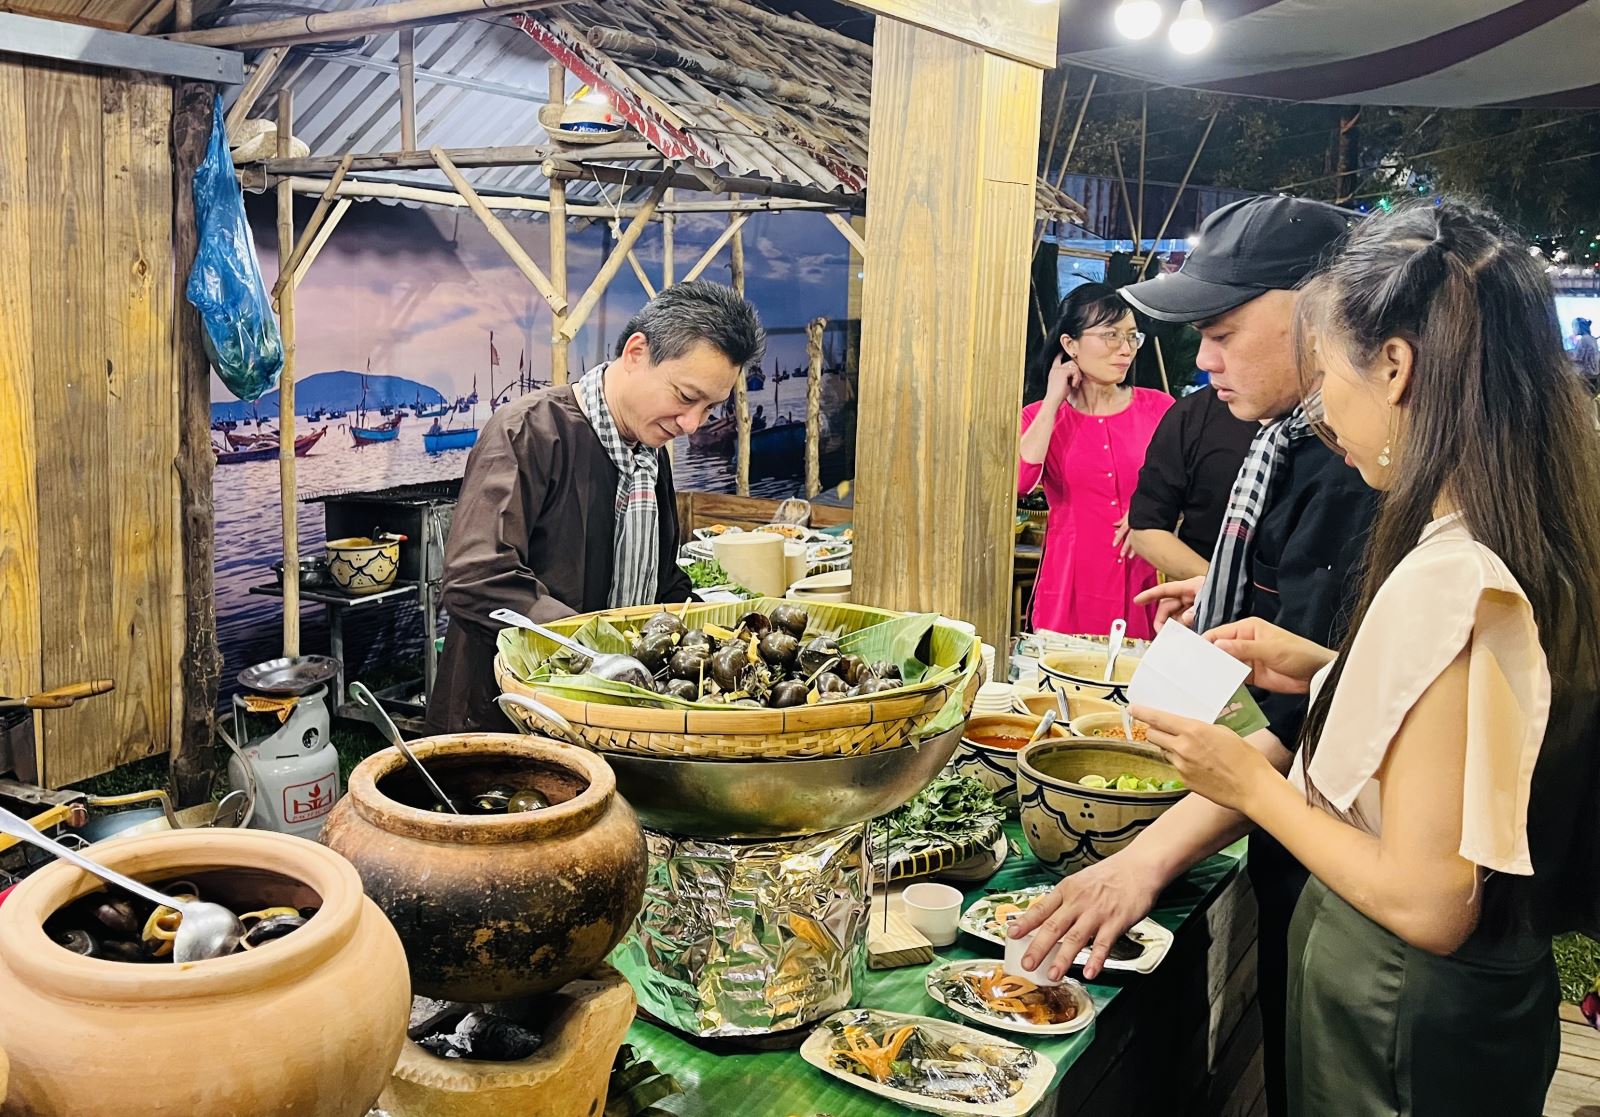 TP Hồ Chí Minh khai thác kinh tế đêm để 'kéo' du khách - Ảnh 4.